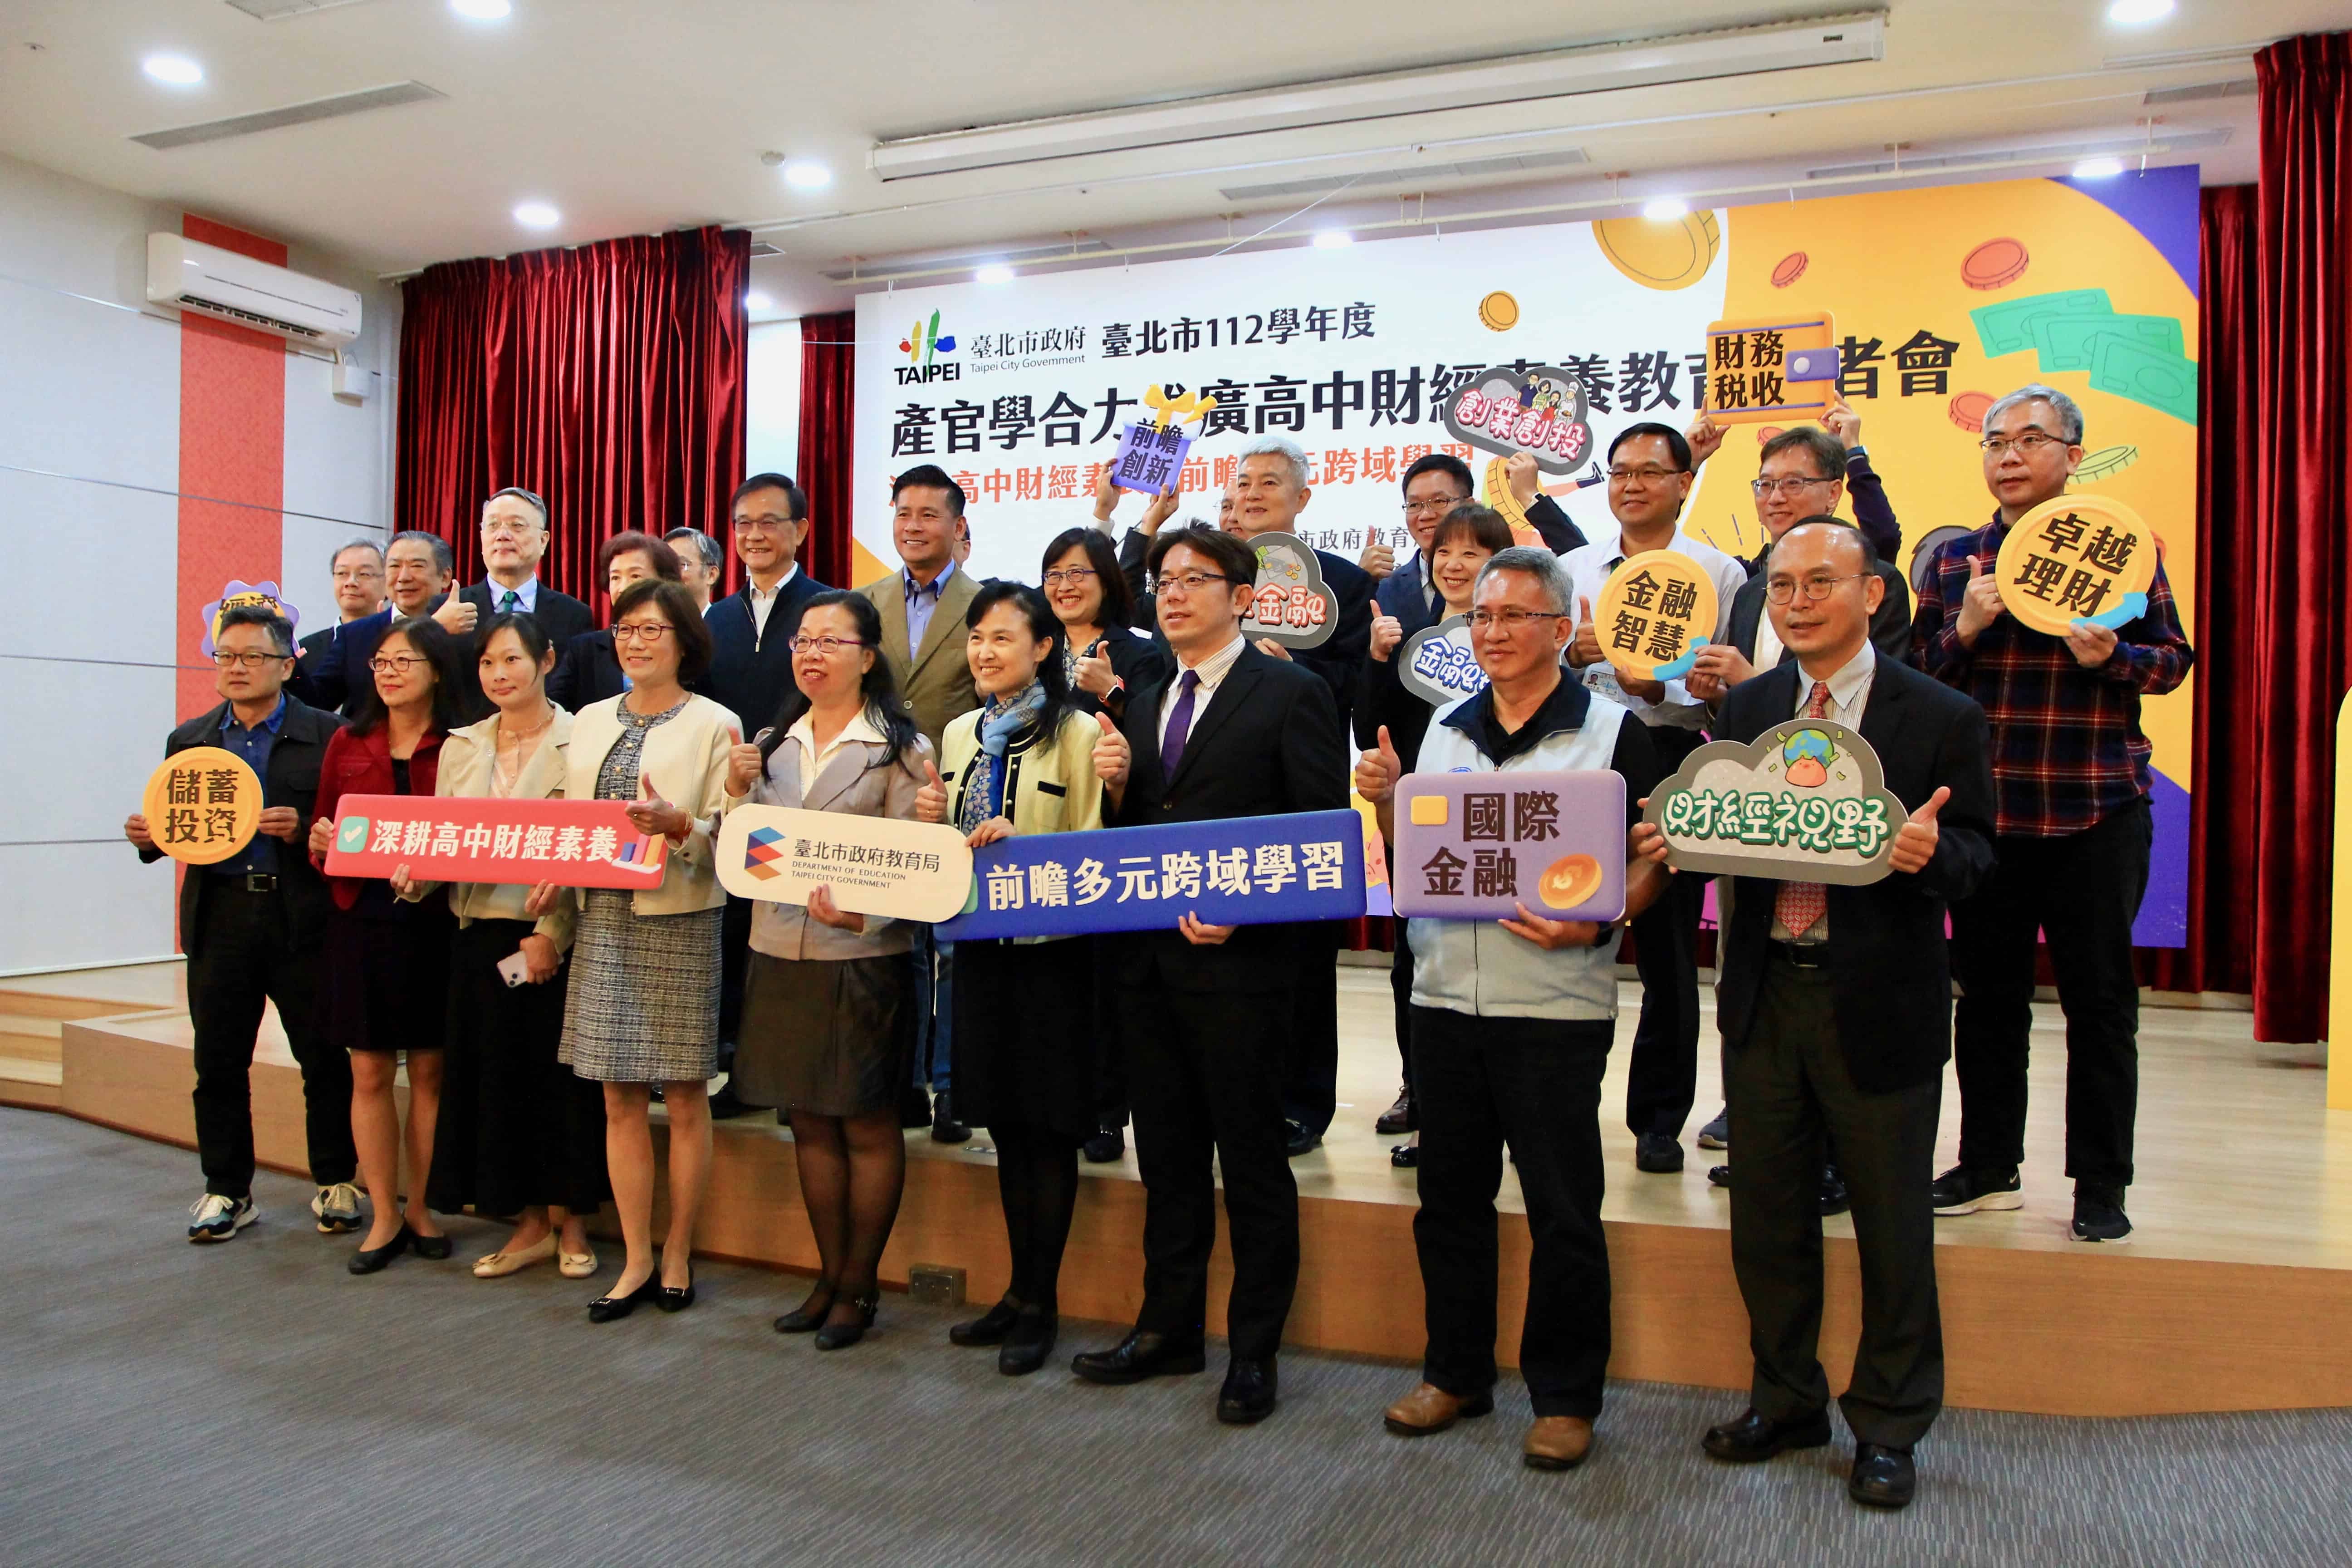 台北市教育局與金融界合力推動高中財經素養教育推廣課程之記者會由右側拍的大合照